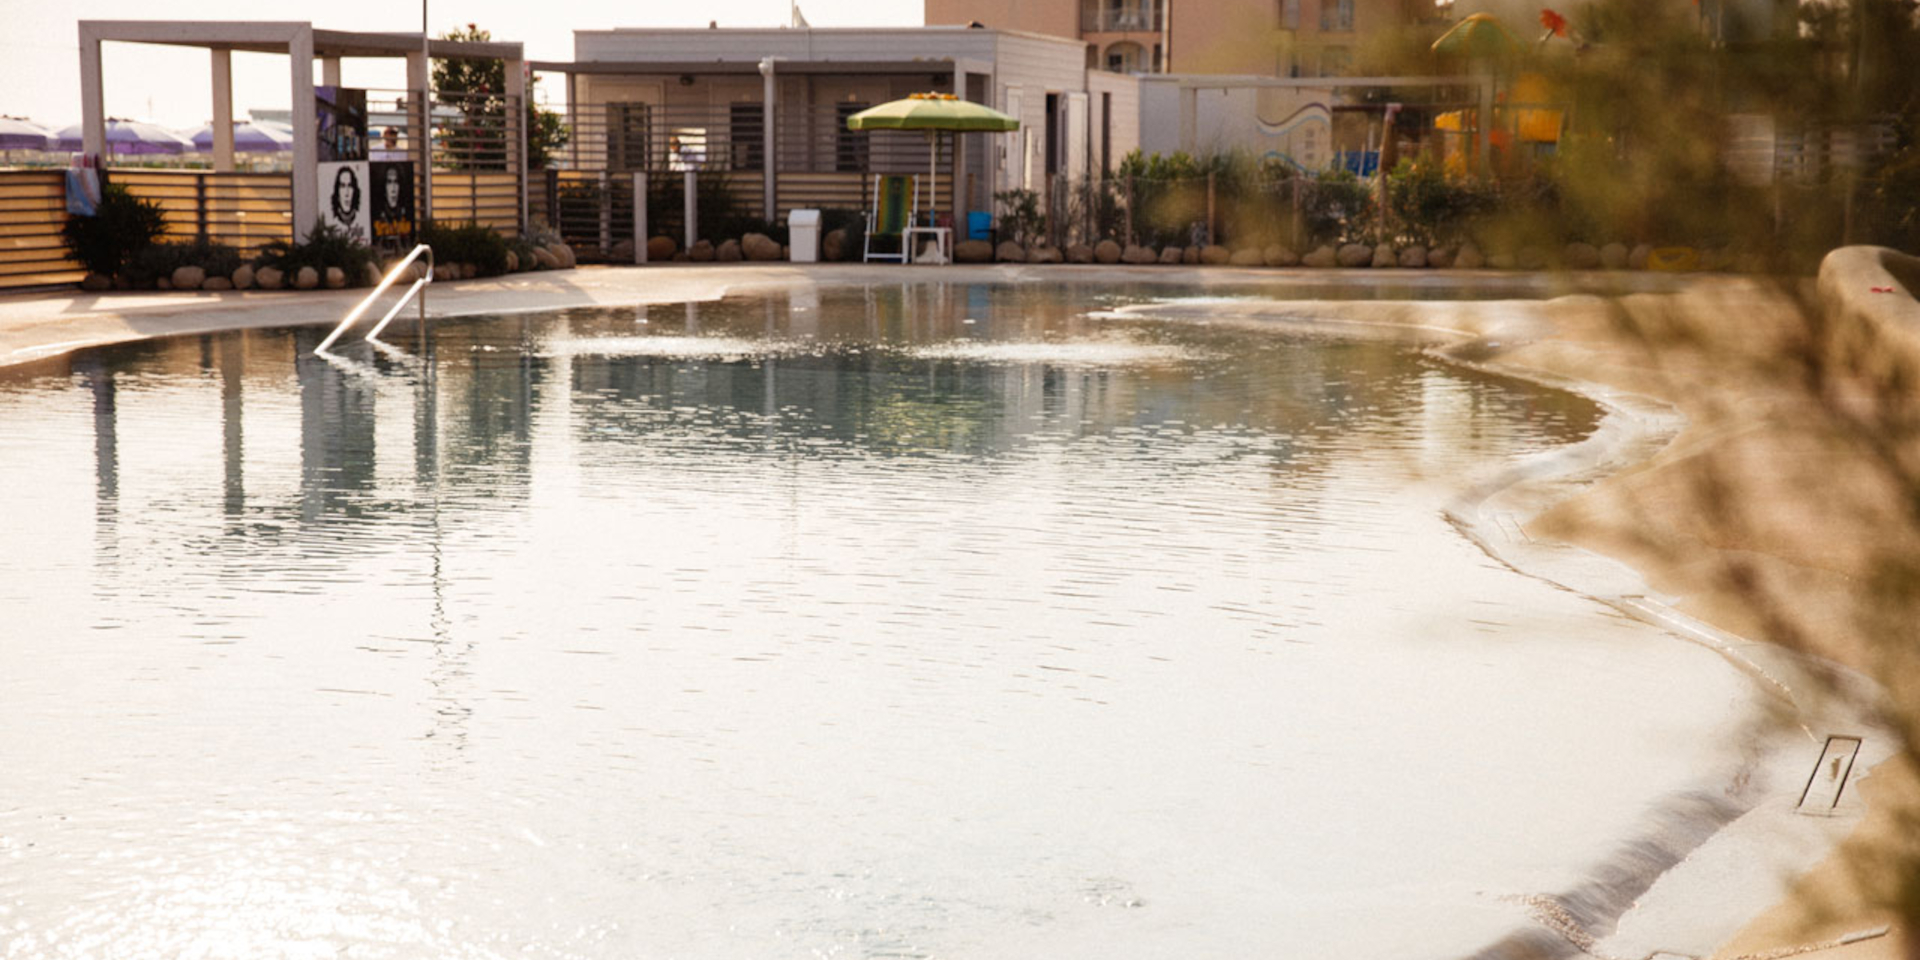  Détendez-vous <span>profitez du coucher de soleil au bord de la piscine</span>